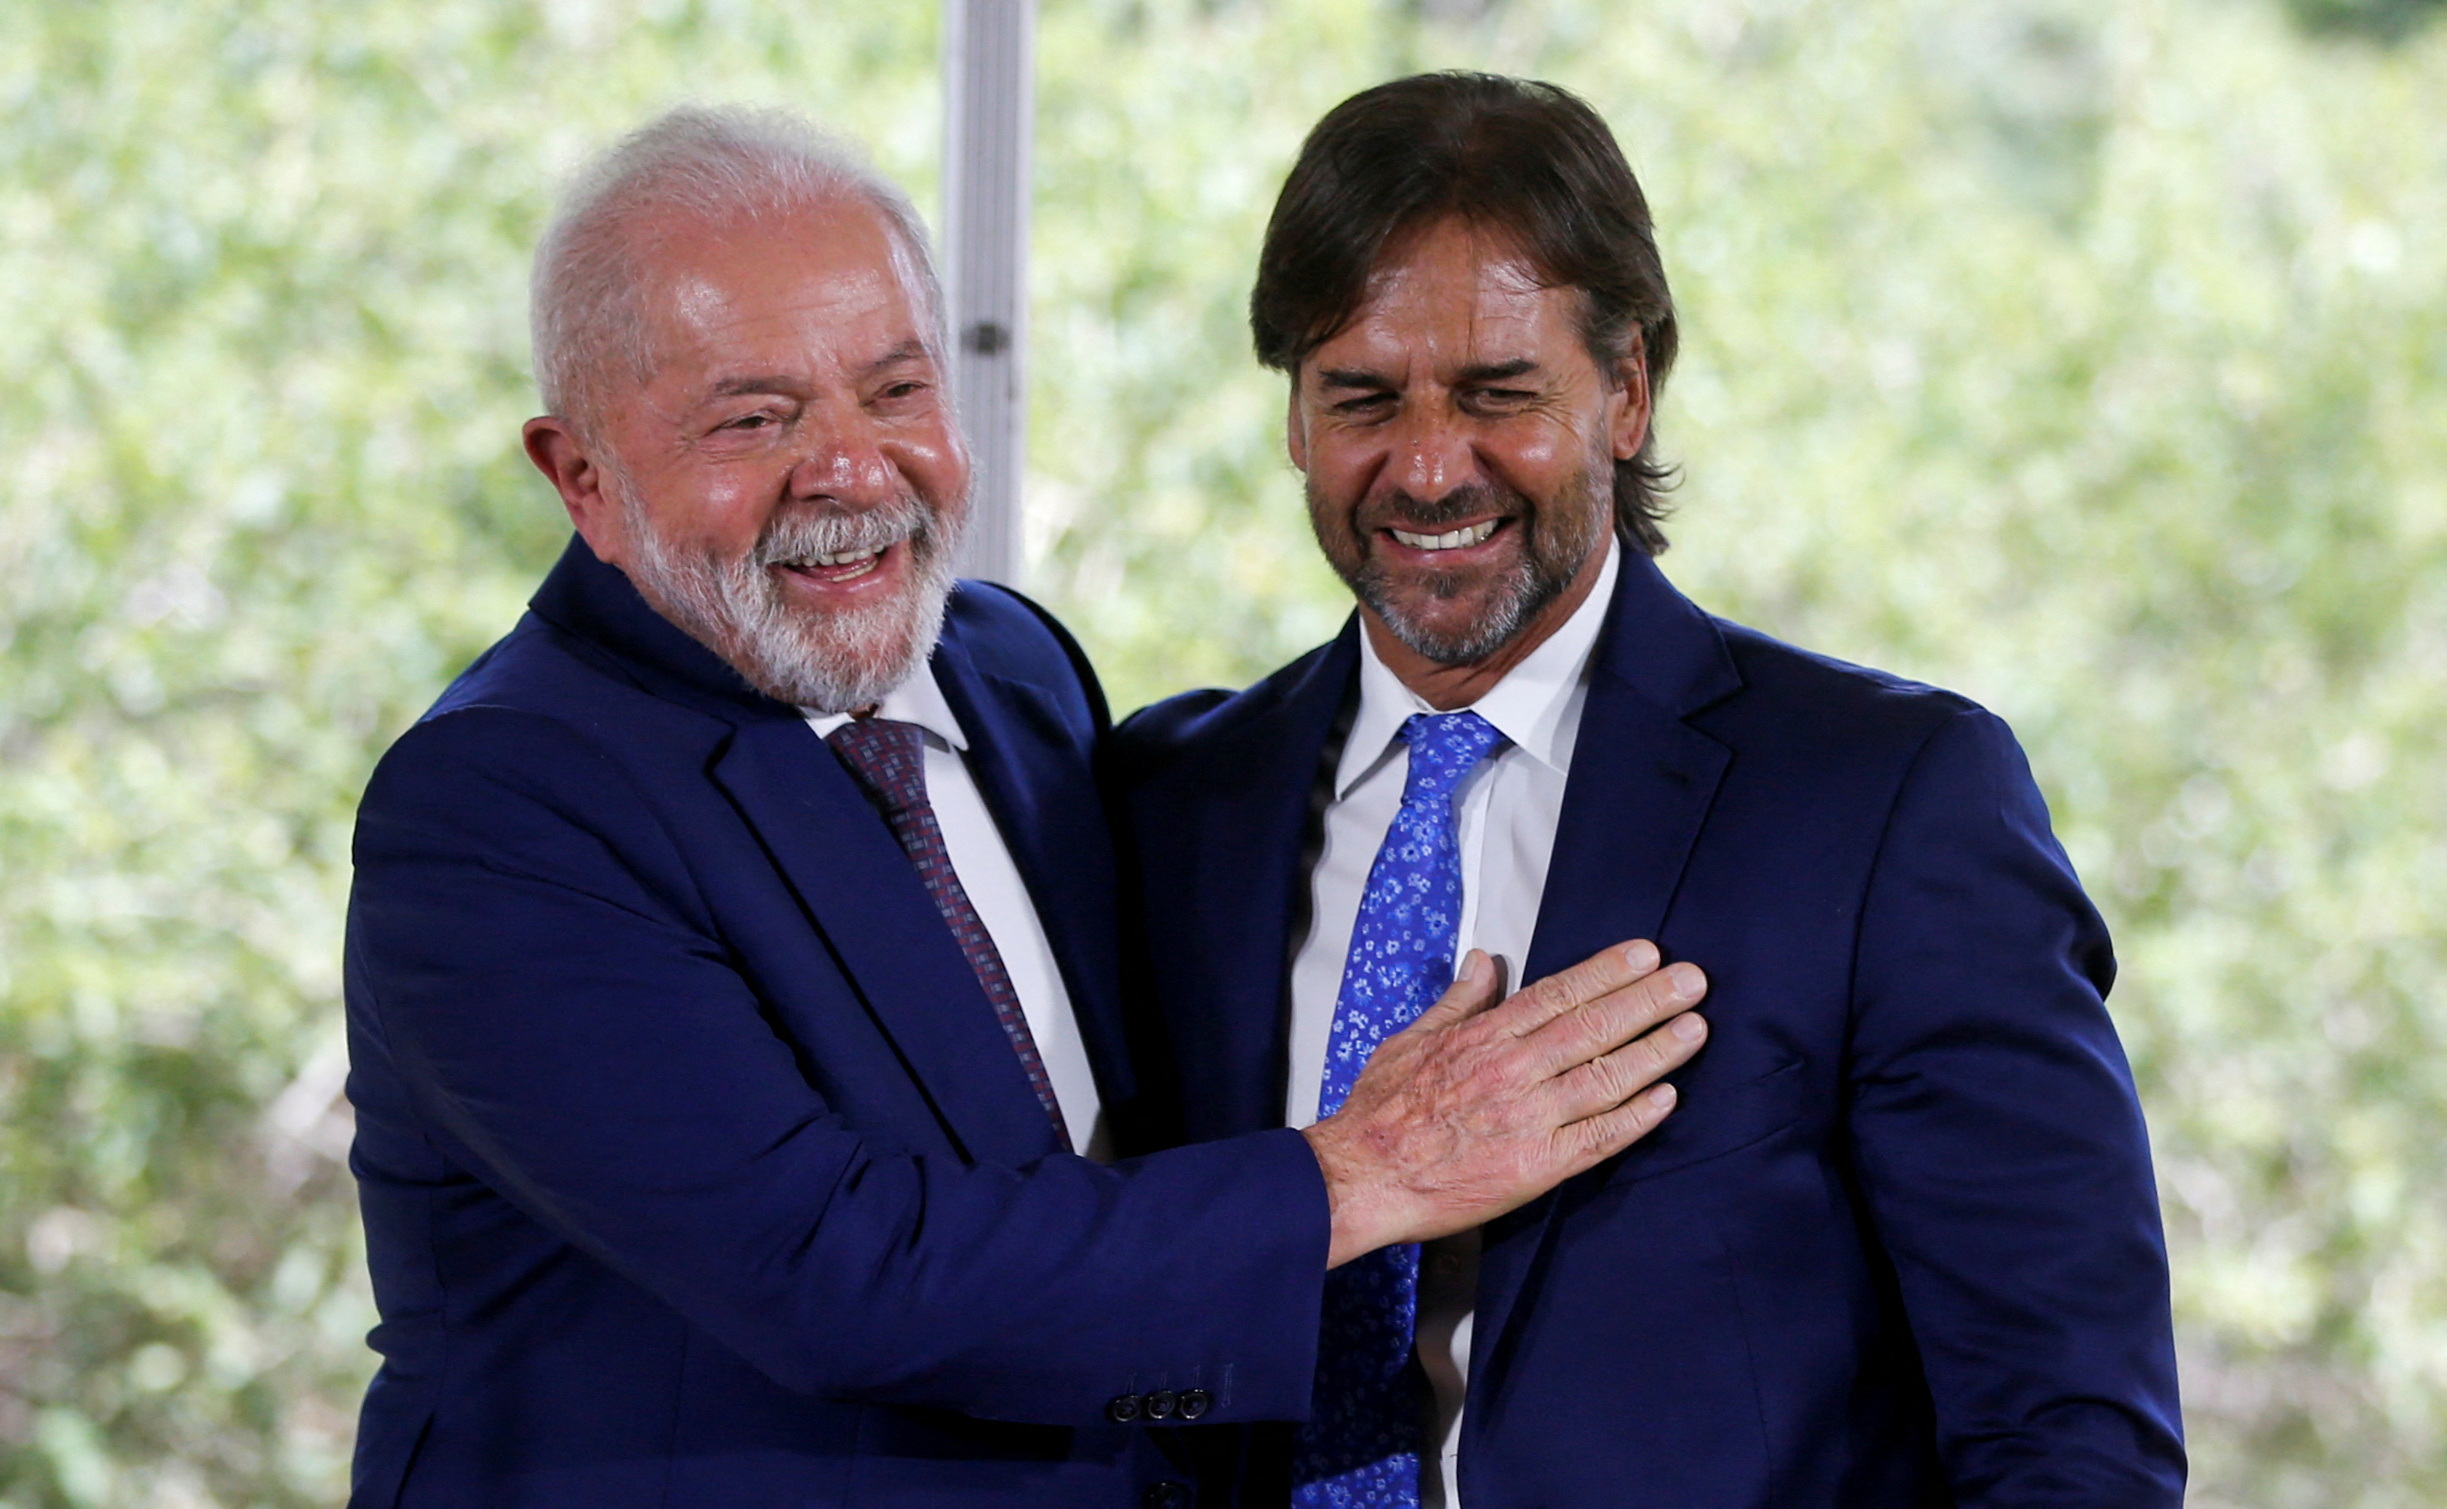 El presidente de Uruguay, Luis Lacalle Pou, y el presidente de Brasil, Luiz Inácio Lula da Silva, posan después de una conferencia de prensa en Montevideo, Uruguay, el 25 de enero. REUTERS/Mariana Greif